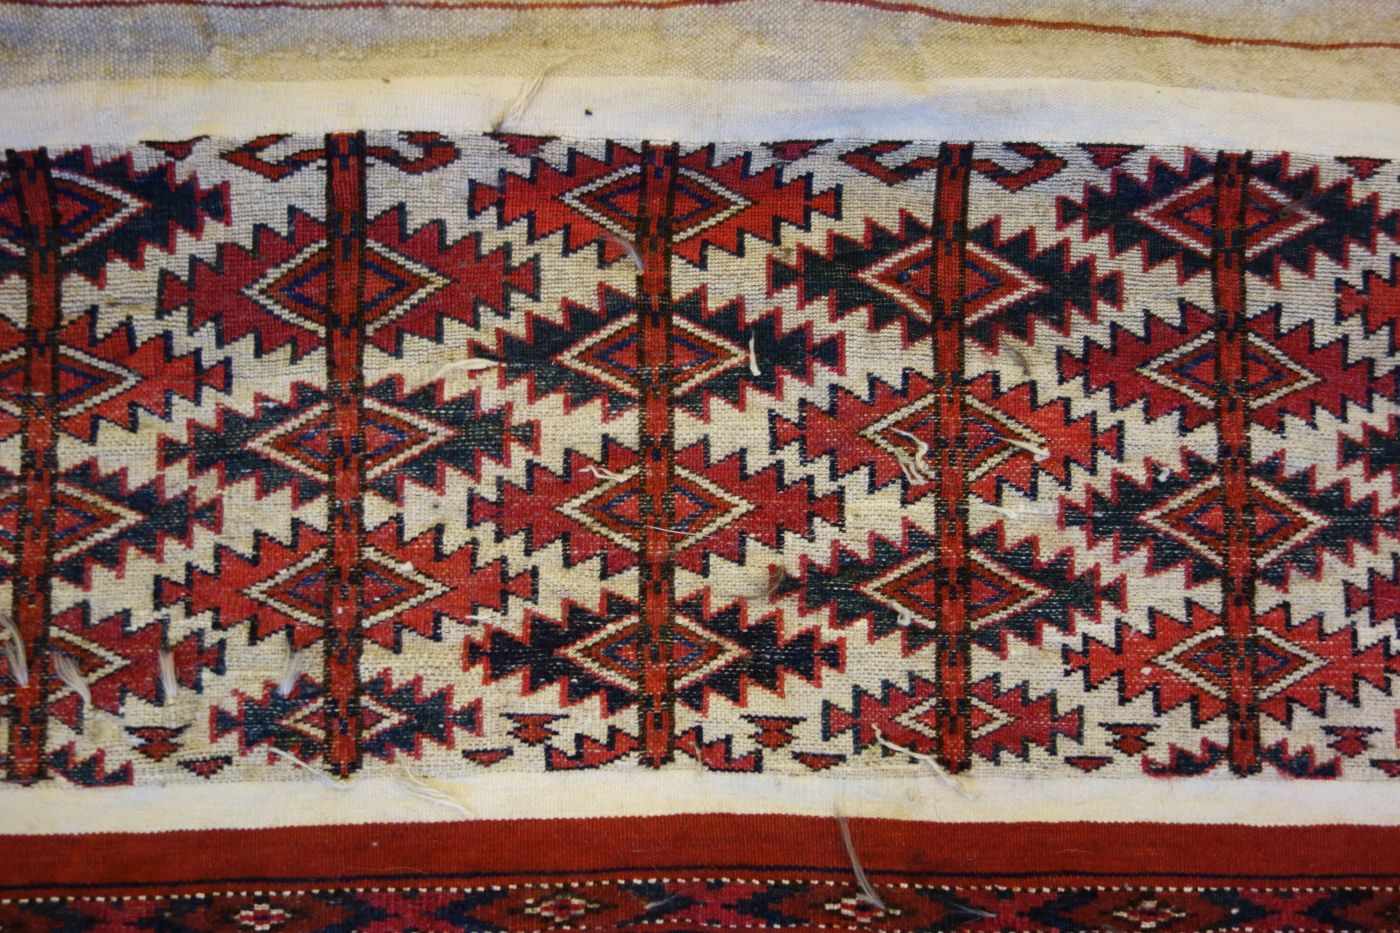 TEKKE AK-TSCHOWAL / TEPPICH / carpet, Turkmenistan, wohl 2. H. 19. Jh., Wechsel von Flor und - Bild 6 aus 18